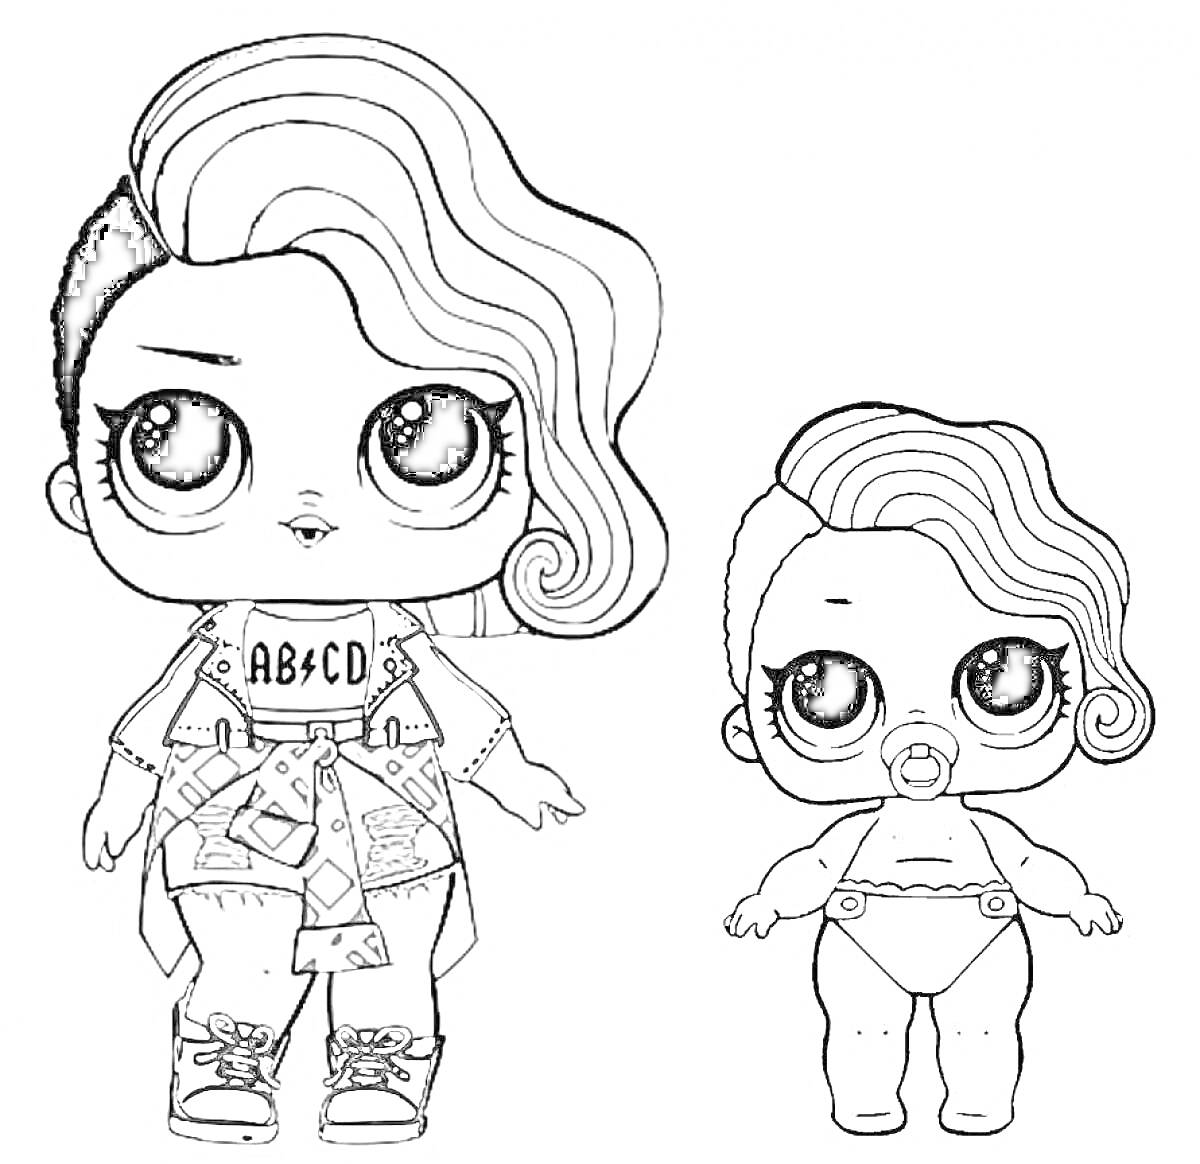 Раскраска Две куклы ЛОЛ, одна взрослая в одежде, другая младенец в подгузнике, короткие стрижки и крупные глаза